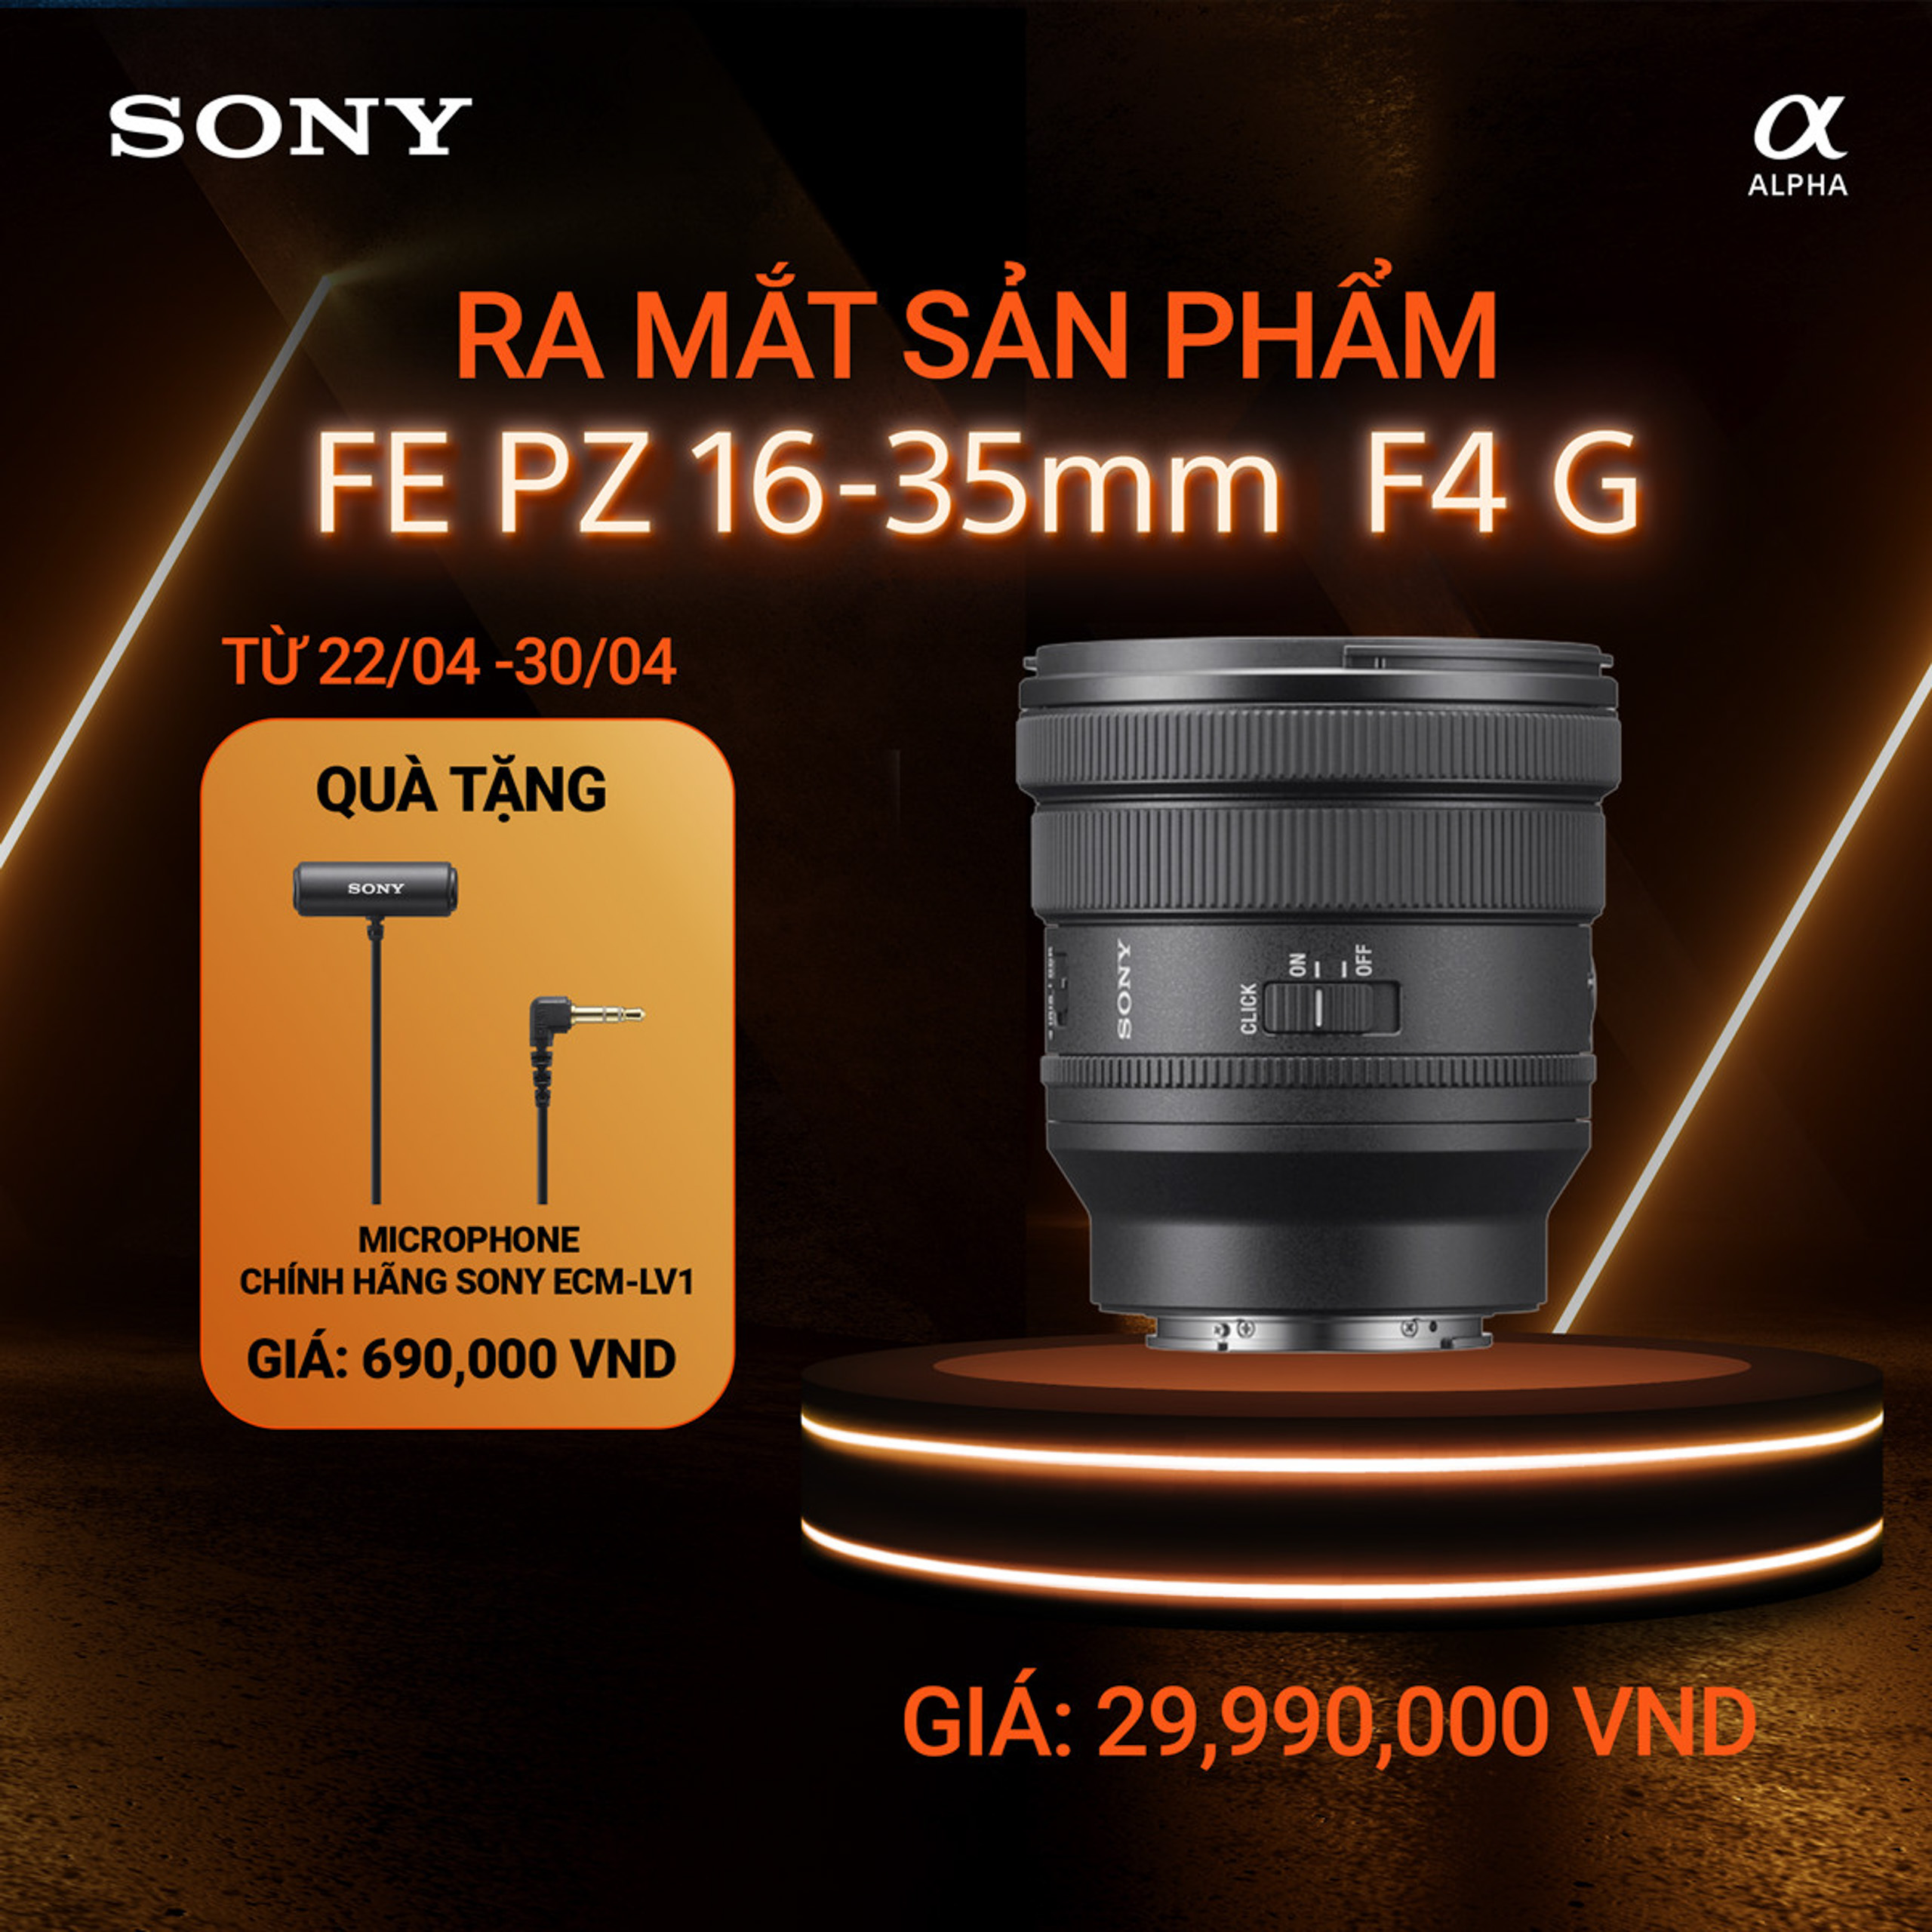 Sony ra mắt FE PZ 16-35mm F4 G - ống kính zoom khẩu độ F4 gọn nhẹ nhất thế giới, giá 29,990,000 VND